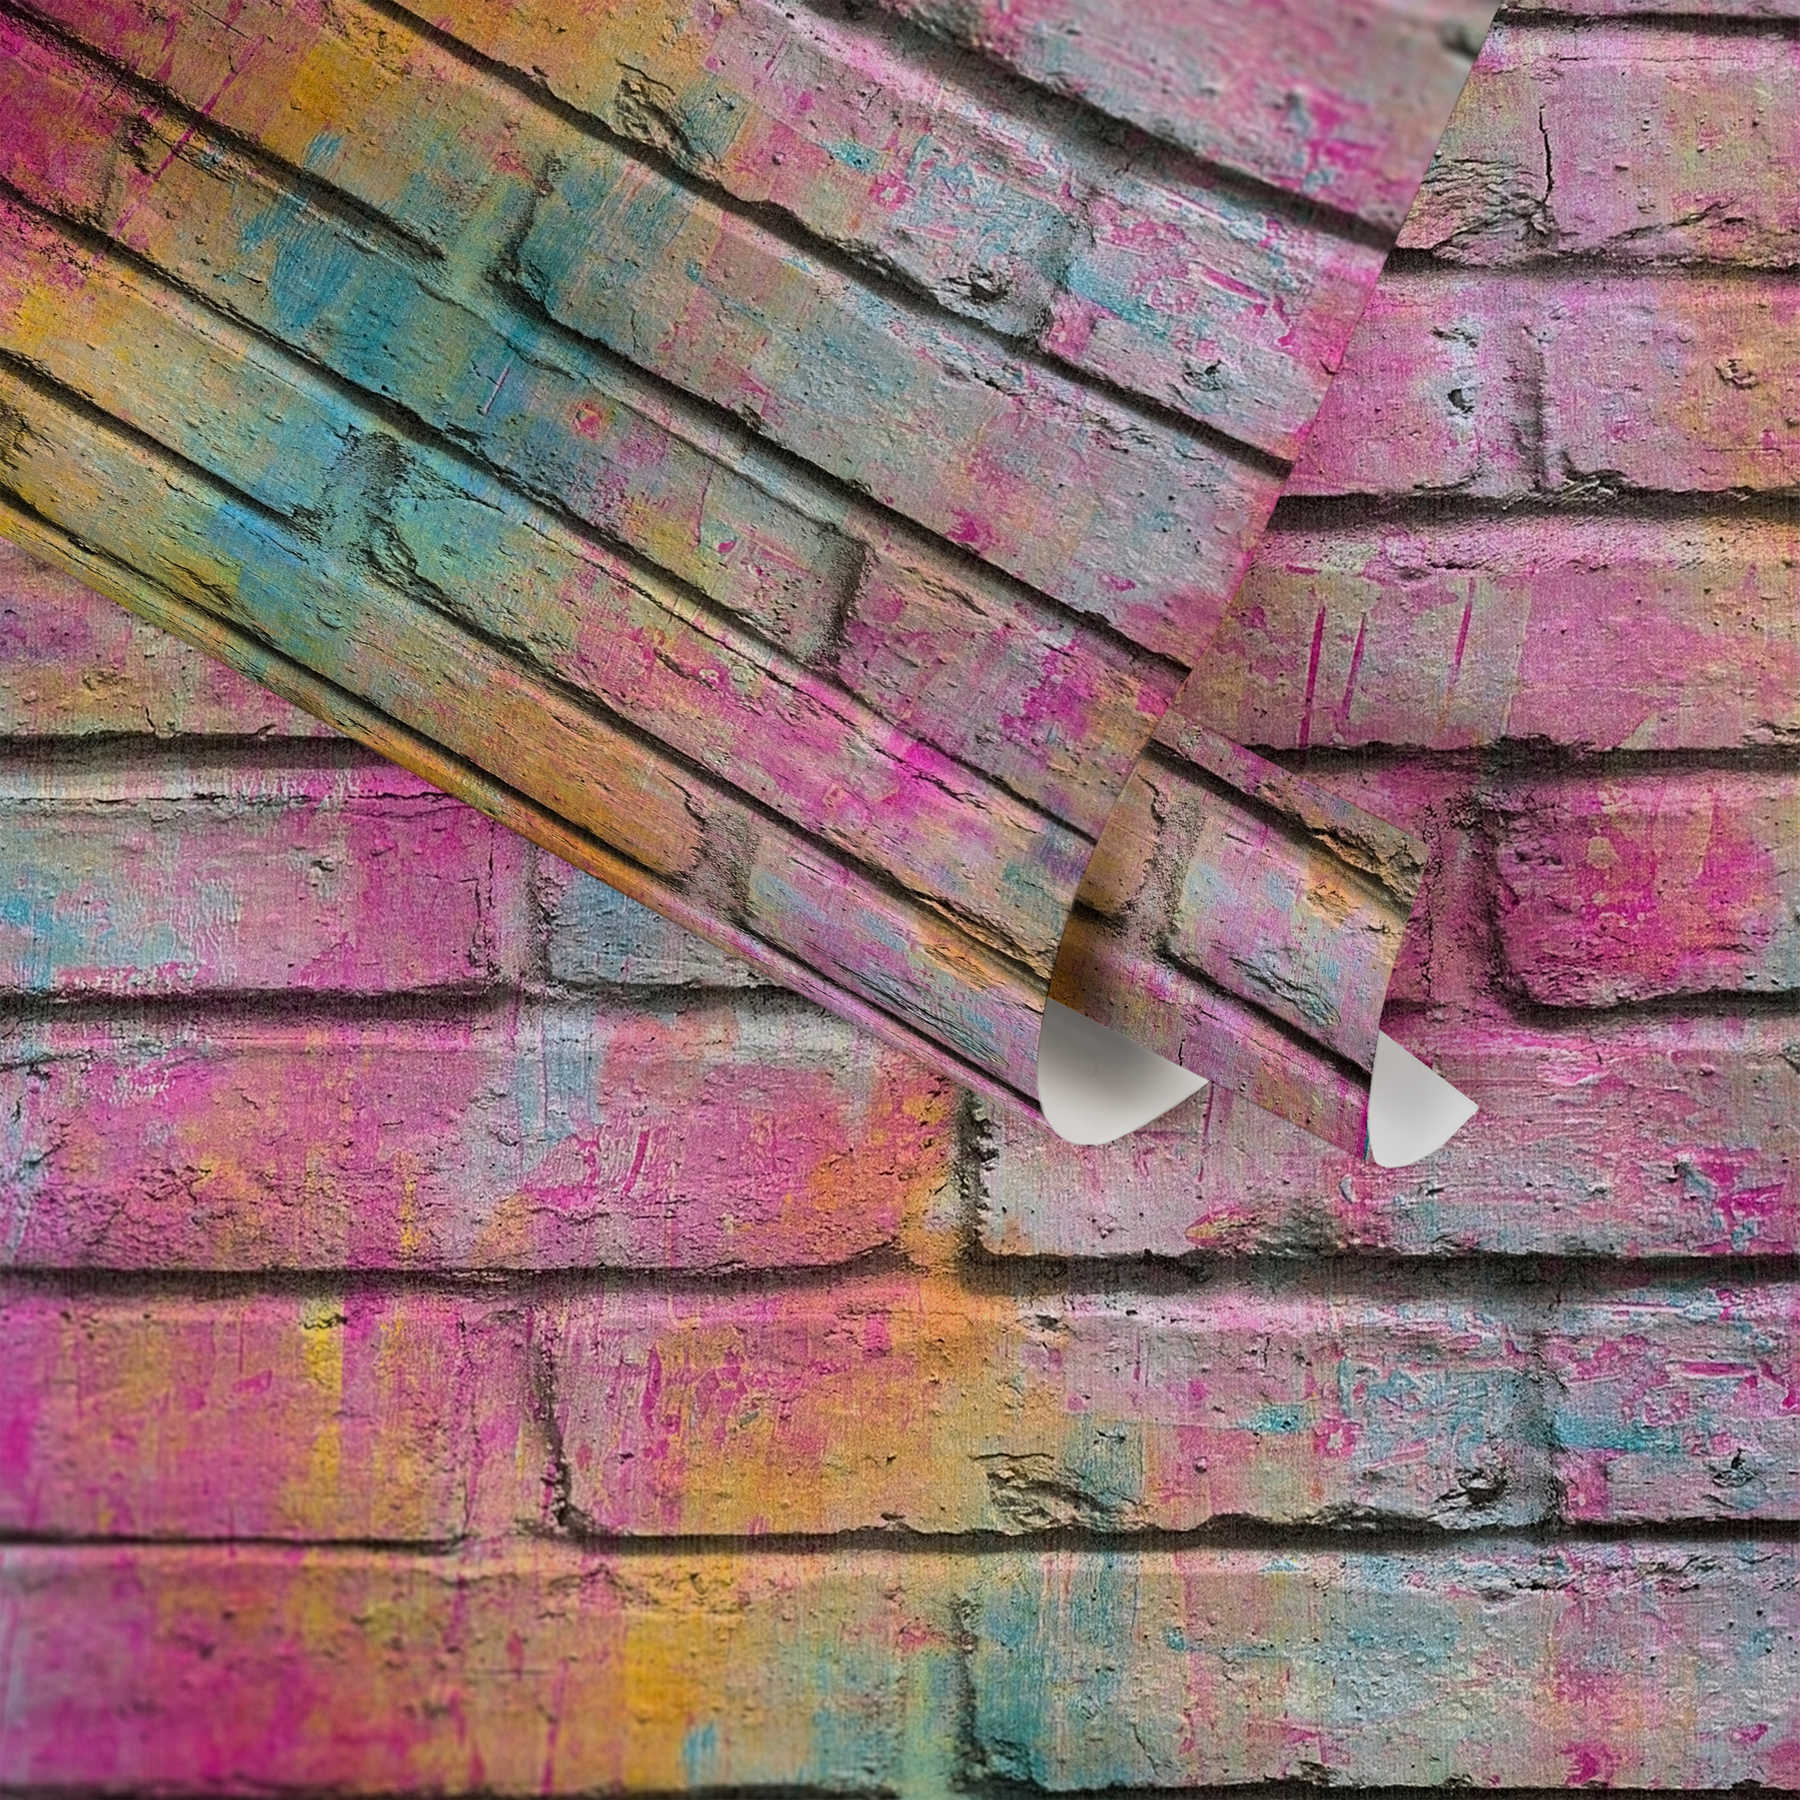             Carta da parati Brick, effetto mattone con struttura in rilievo - multicolore, viola
        